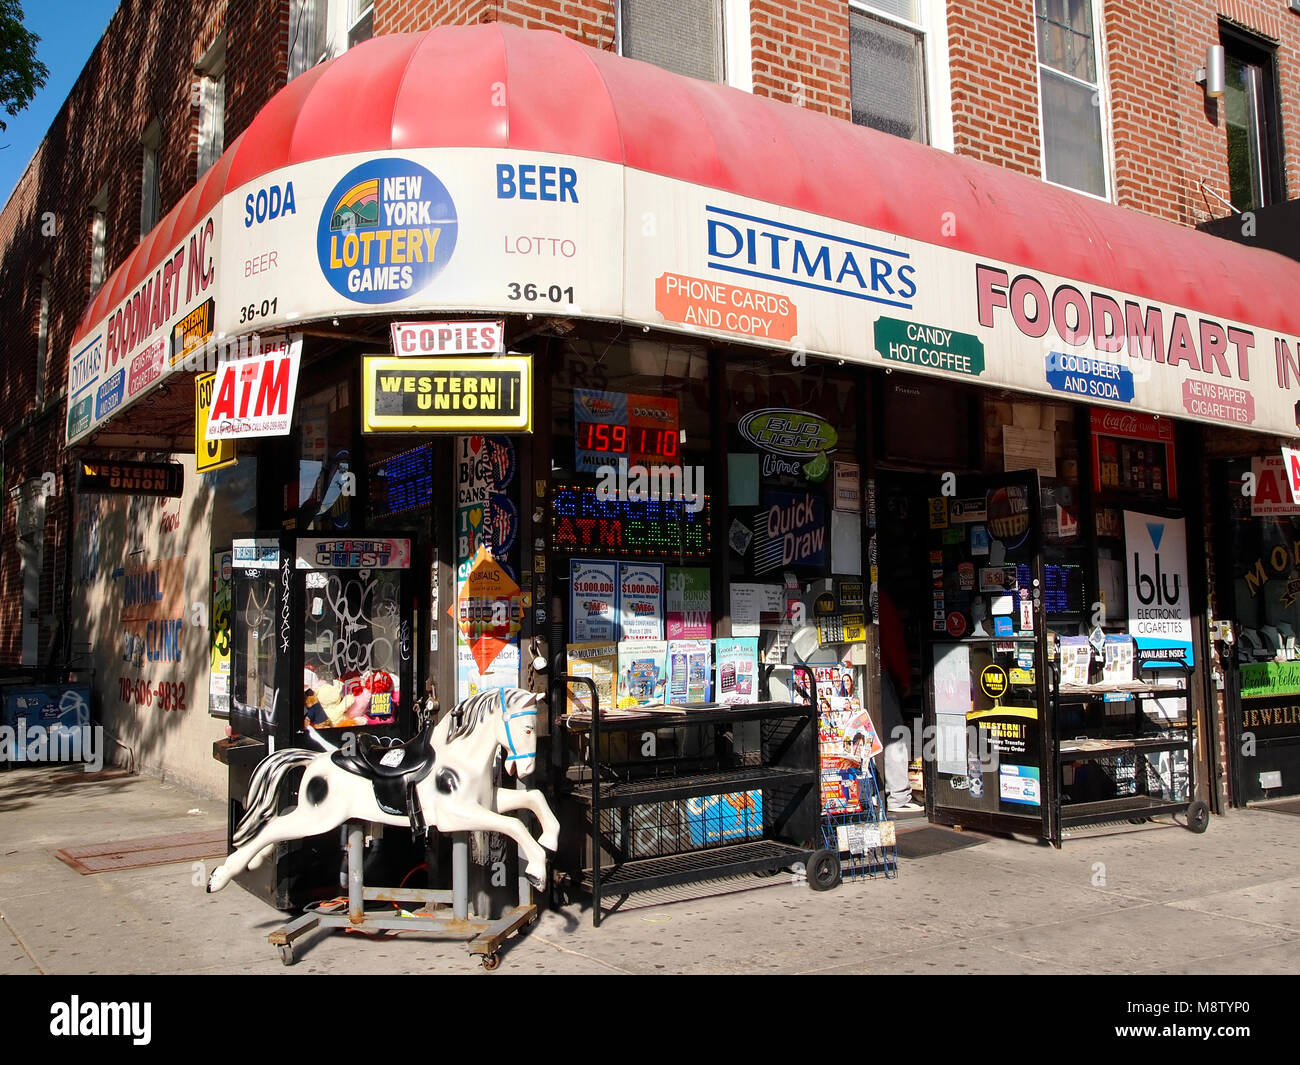 Astoria, Queens, NY - 3. Mai 2015: den Ditmars Foodmart, einem beliebten Supermarkt an der Ecke von den Ditmars Boulevard und 36th St. in Queens, New York. Stockfoto